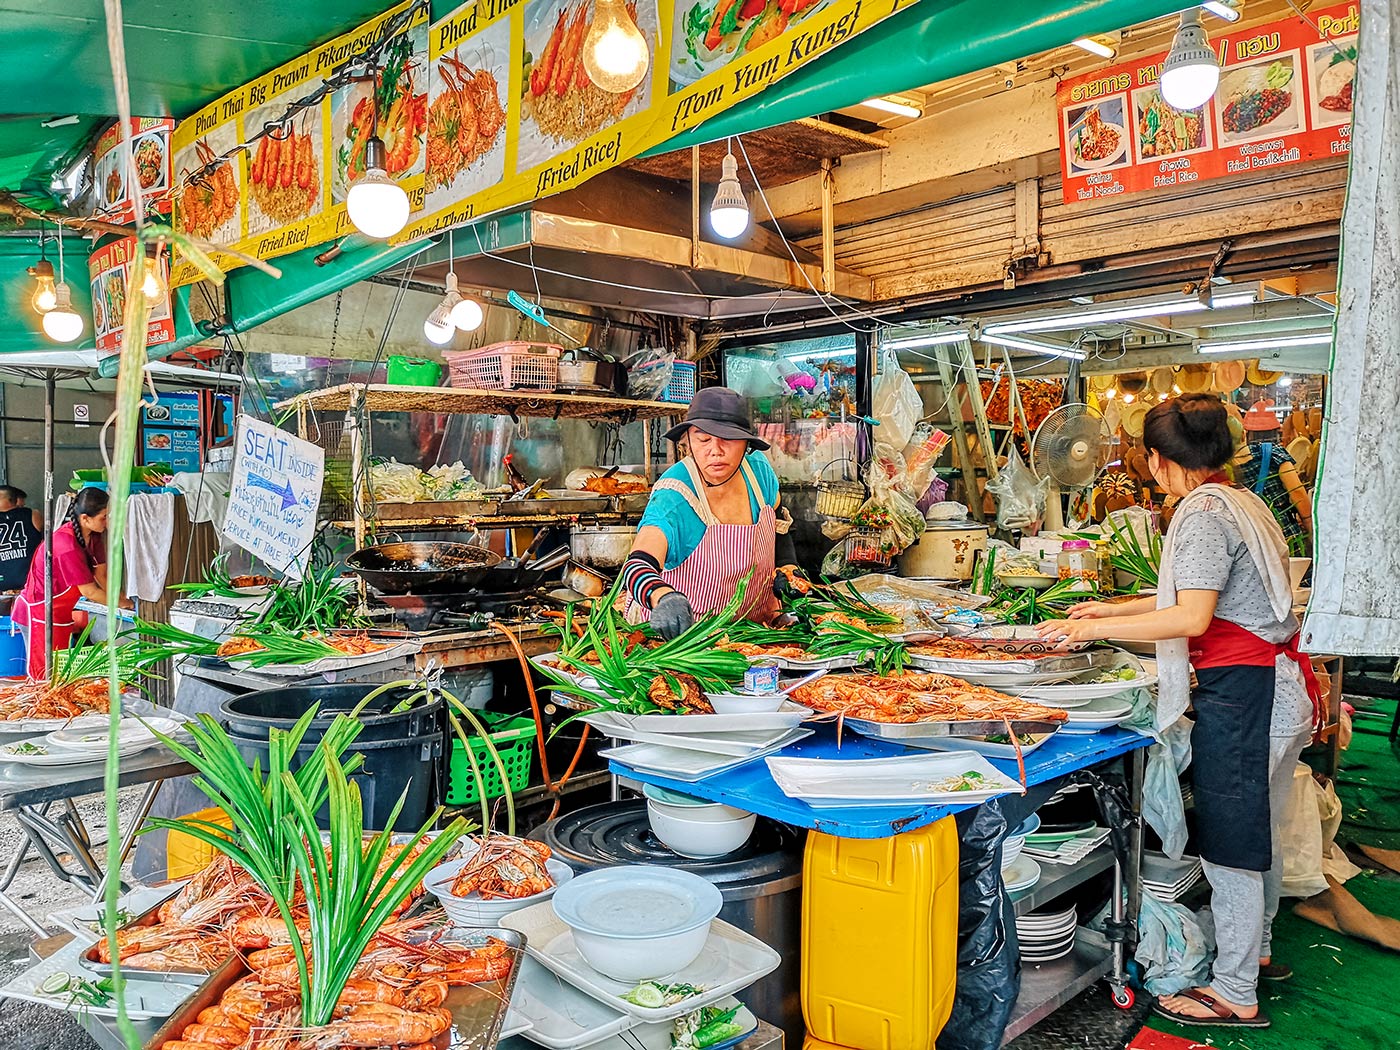 Chatuchak hétvégi piac Bangkokban - a végső útmutató blogbejegyzés